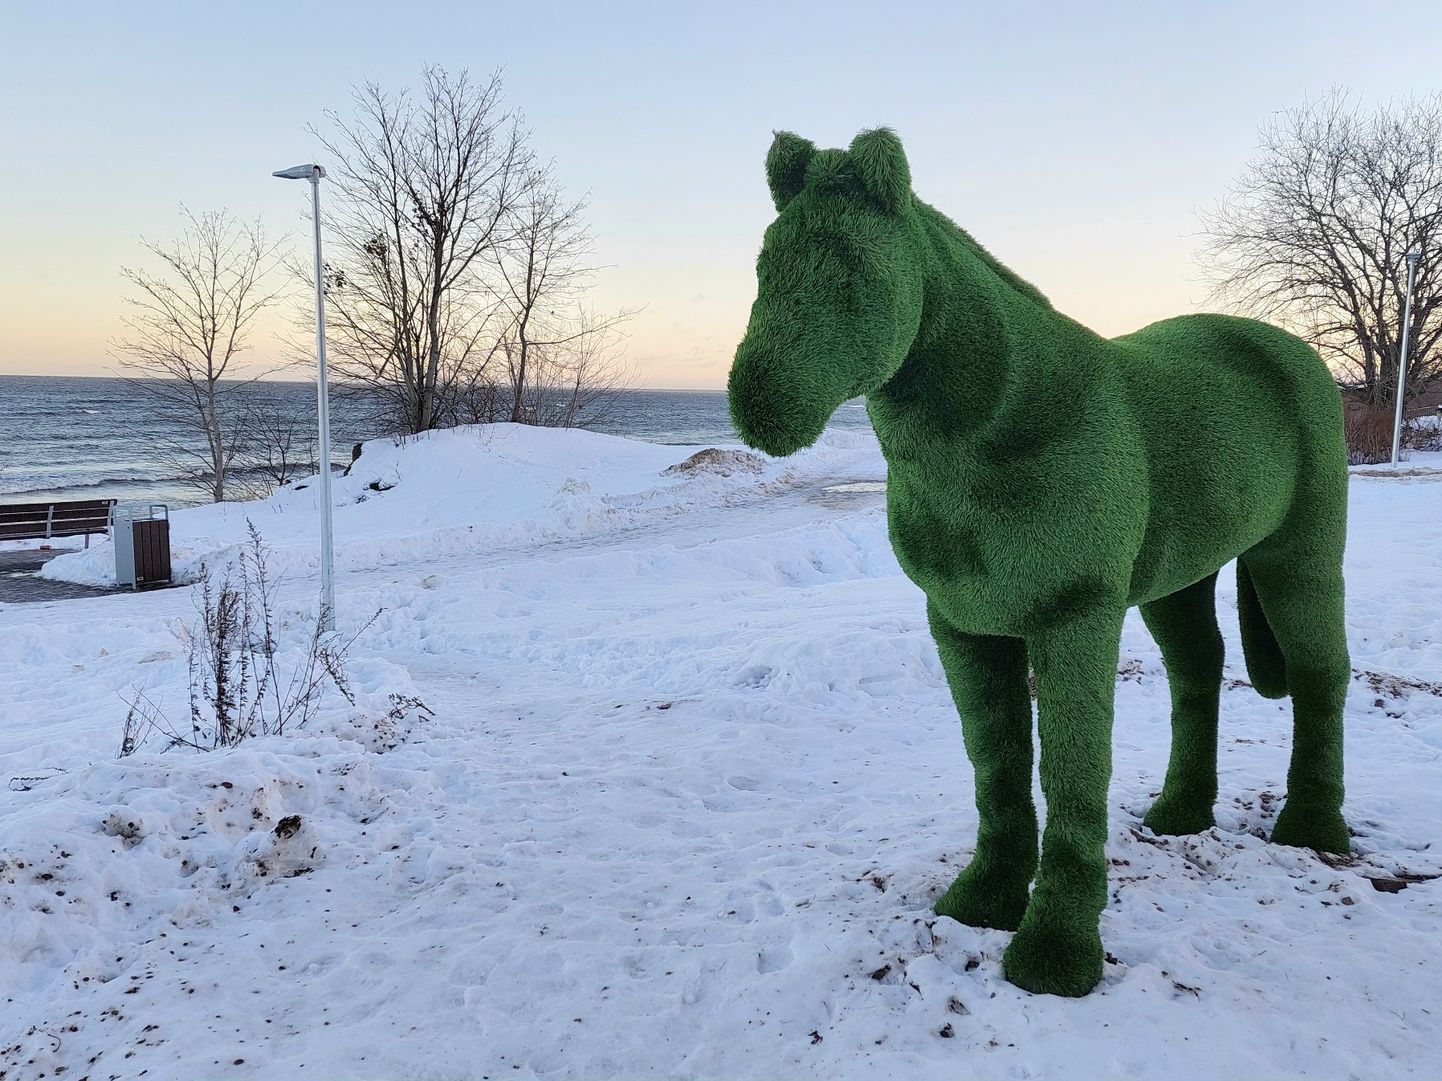 Зеленая лошадь стала популярным объектом для фотографий на новом участке морского променада.